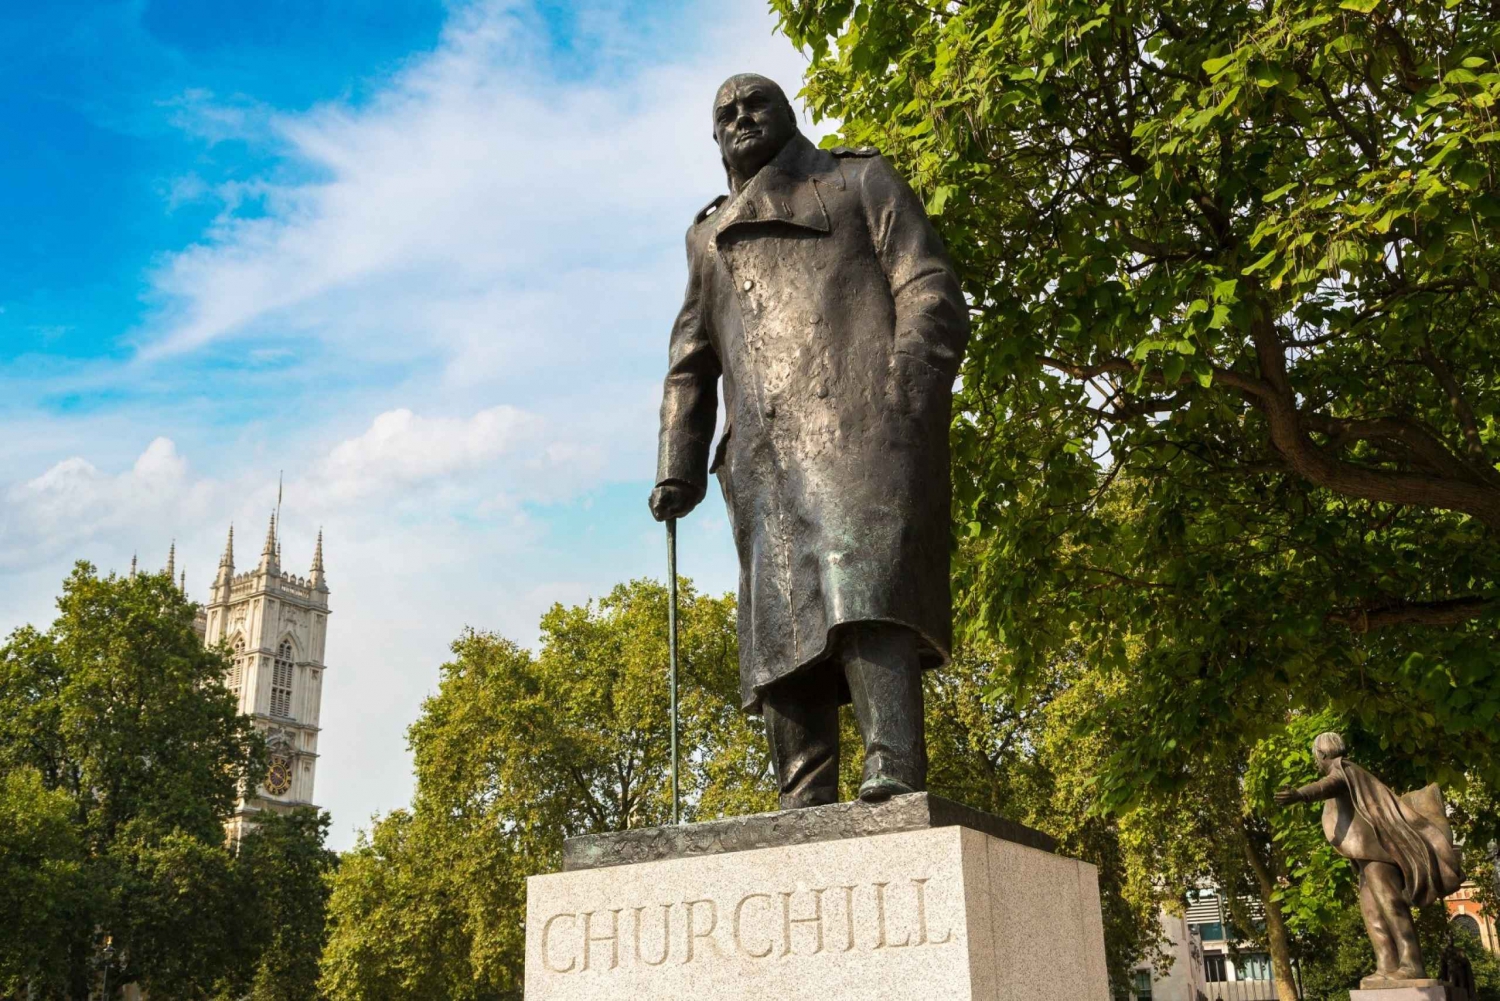 Skip-the-Line-tur til Churchill War Rooms og høydepunktene i London